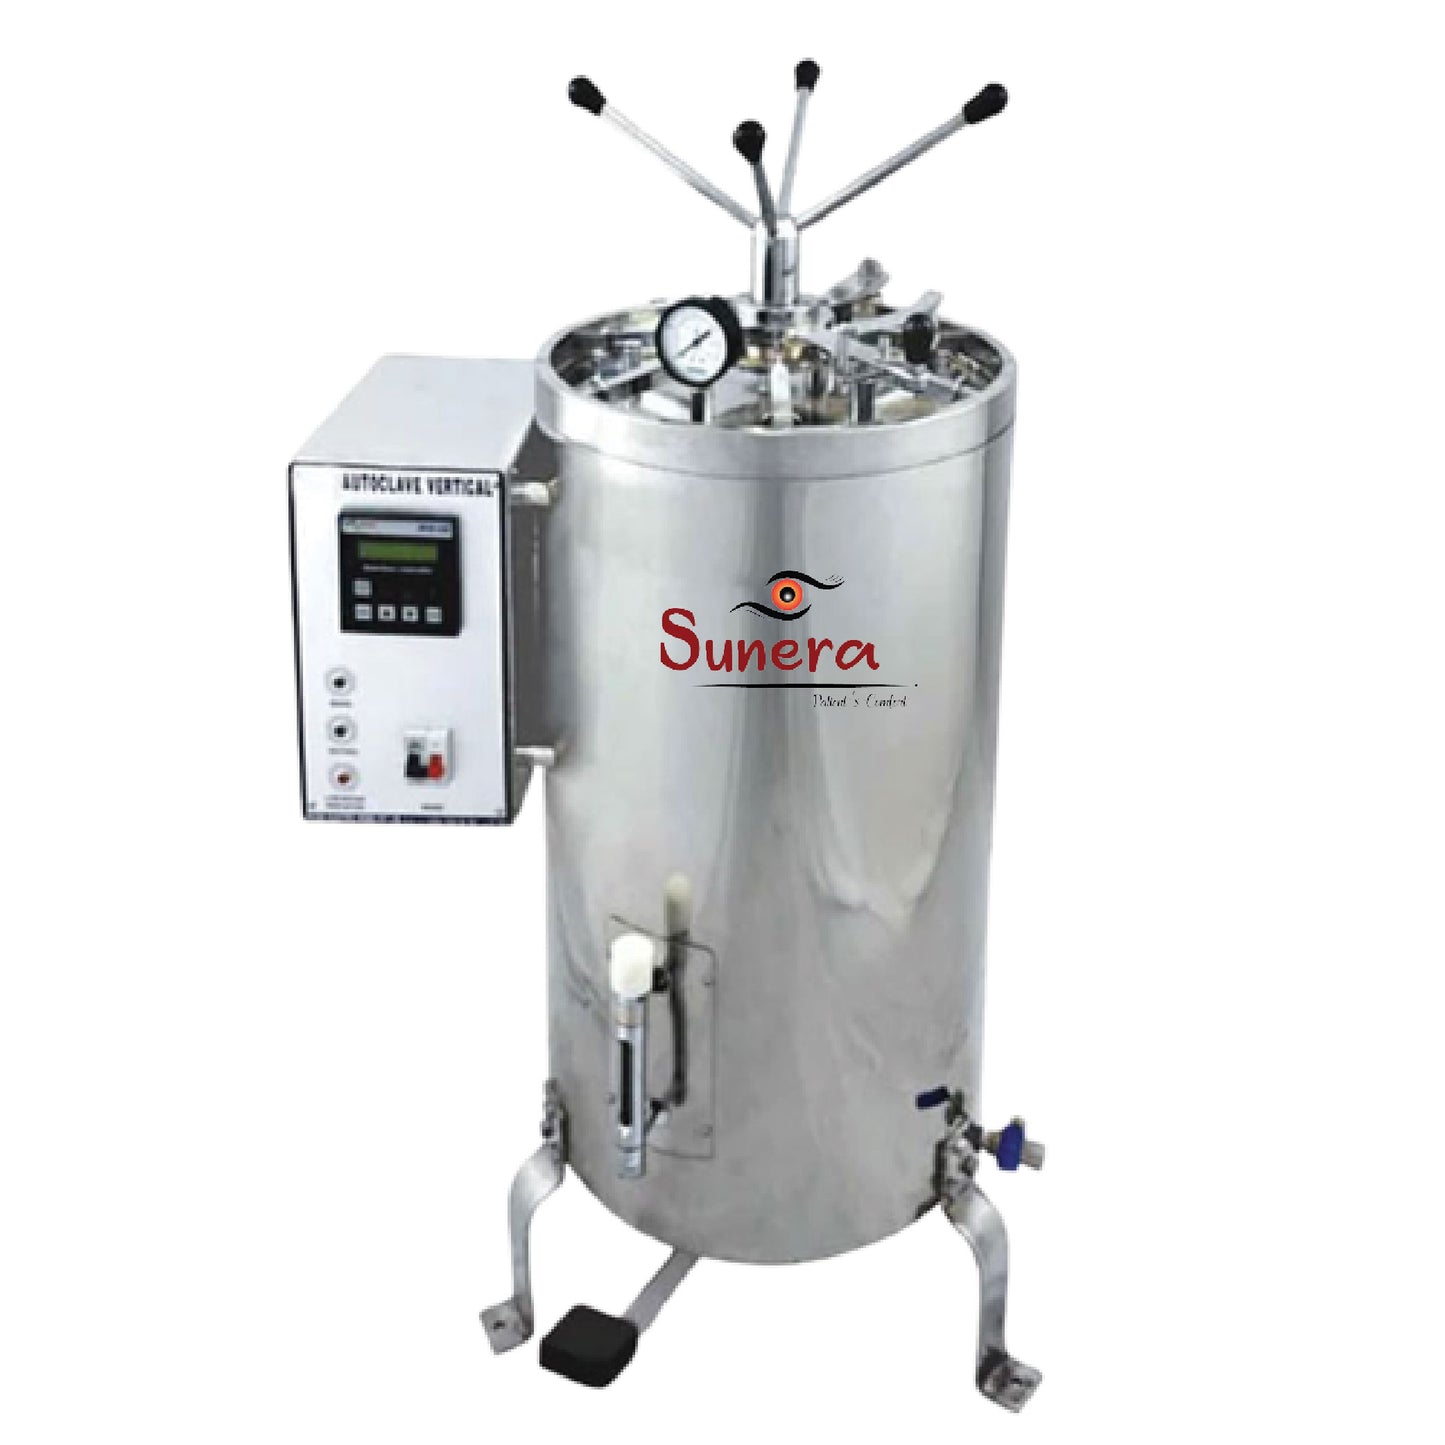 Fully Automatic Vertical High Pressure Steam Sterilizer